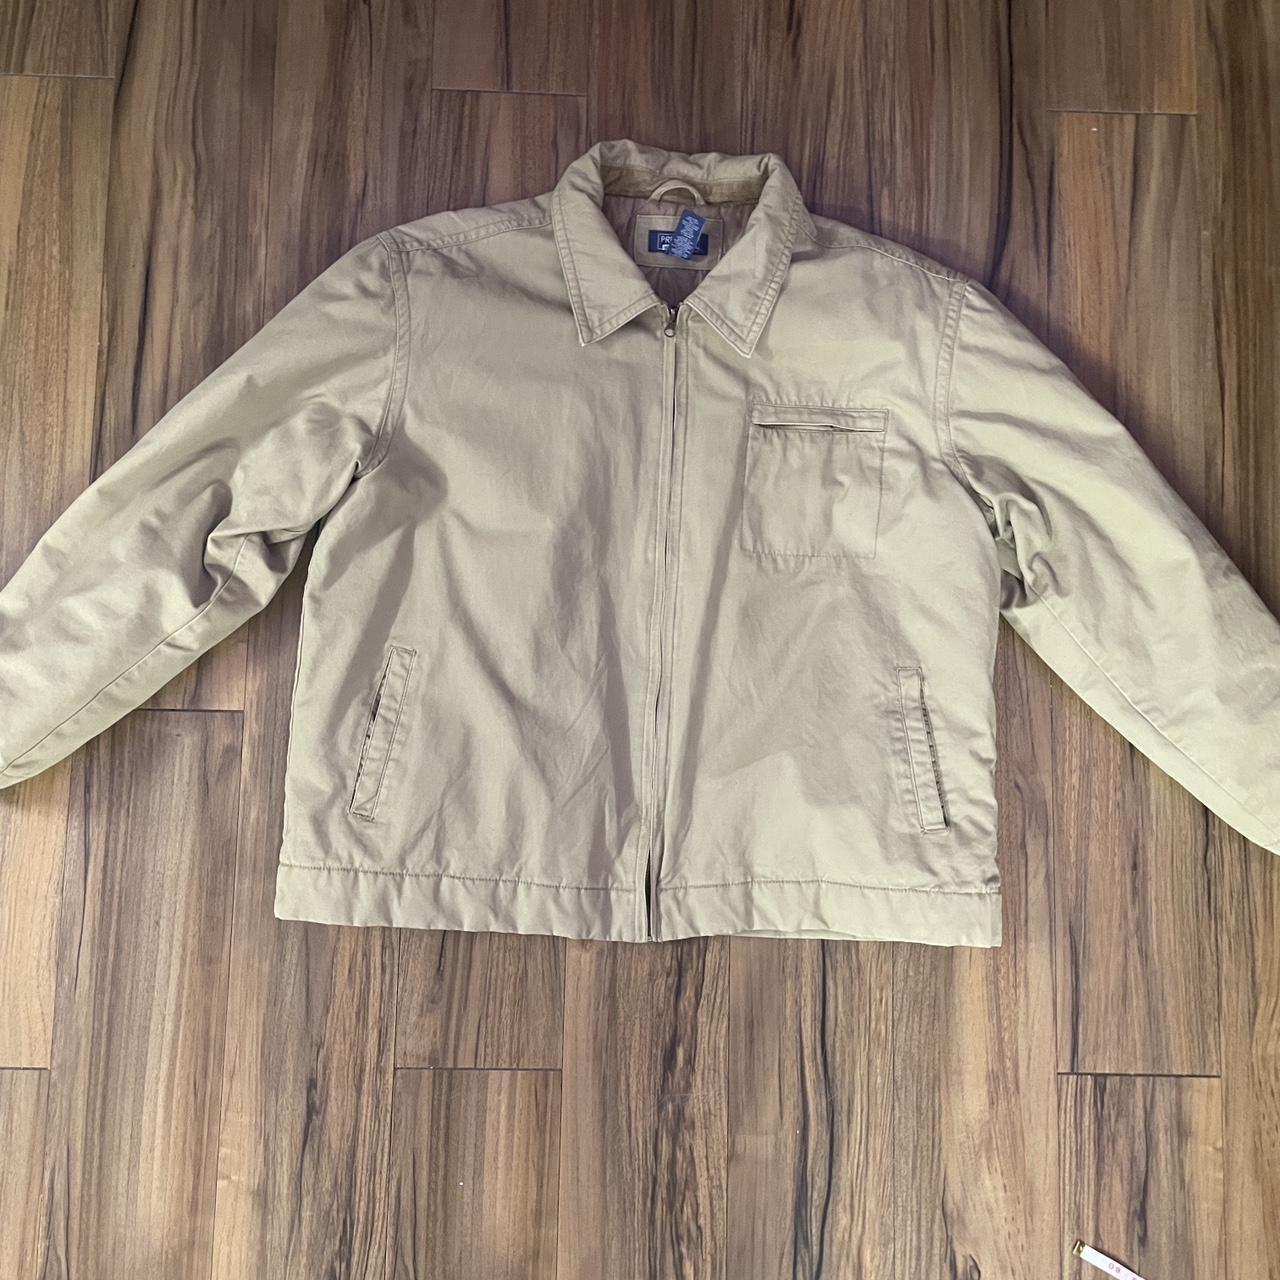 Vintage jacket - Depop